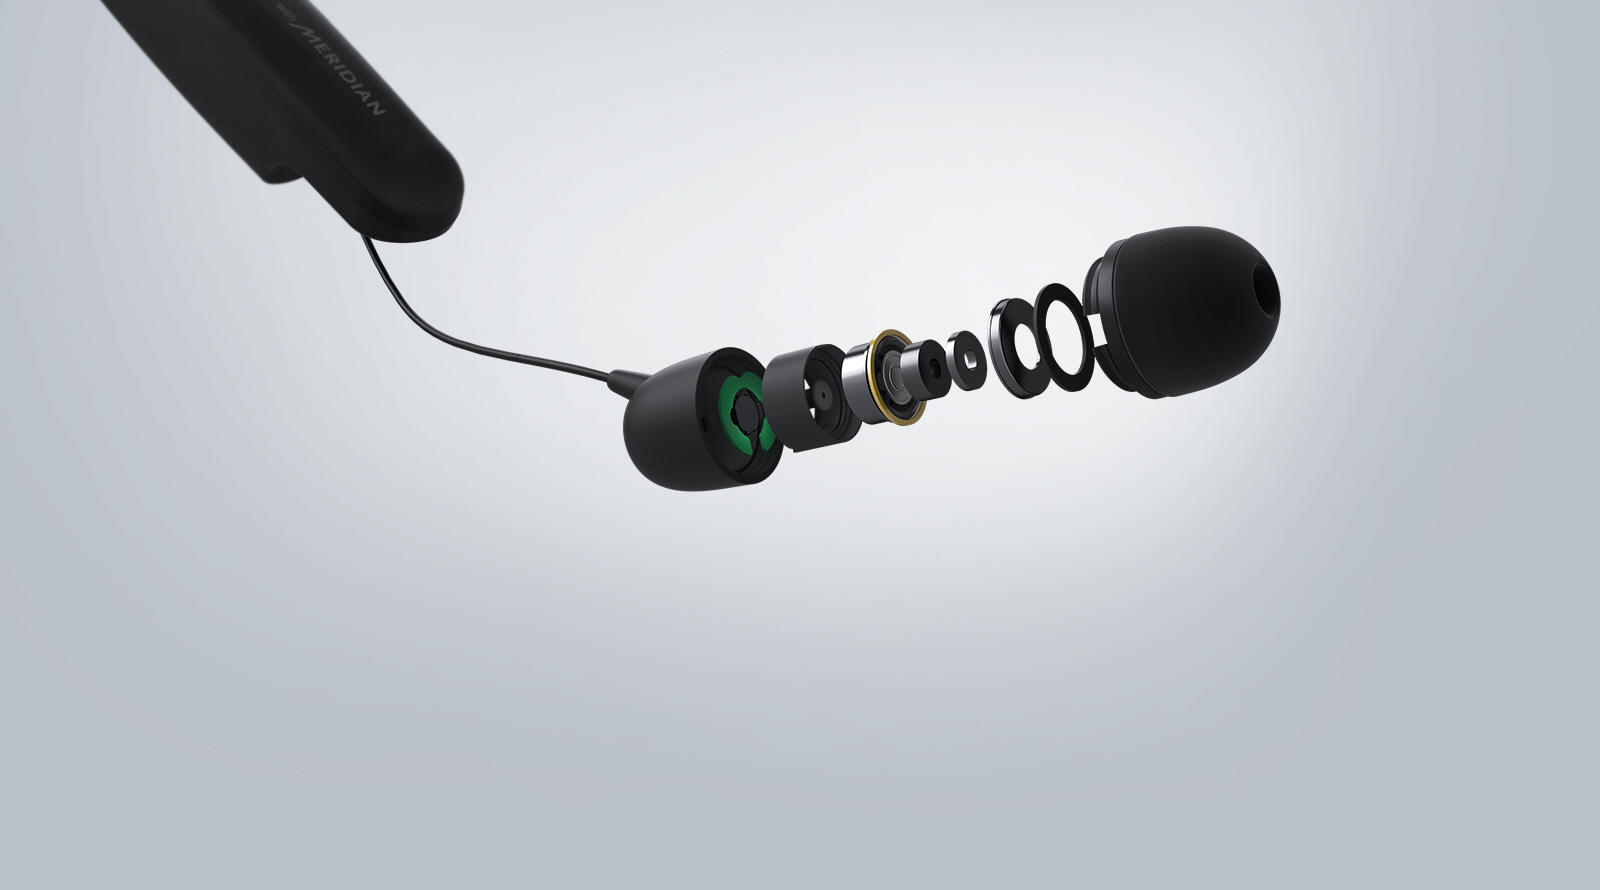 Tai nghe không dây nhét tai LG HBS-SL5 (Hàng chính hãng)